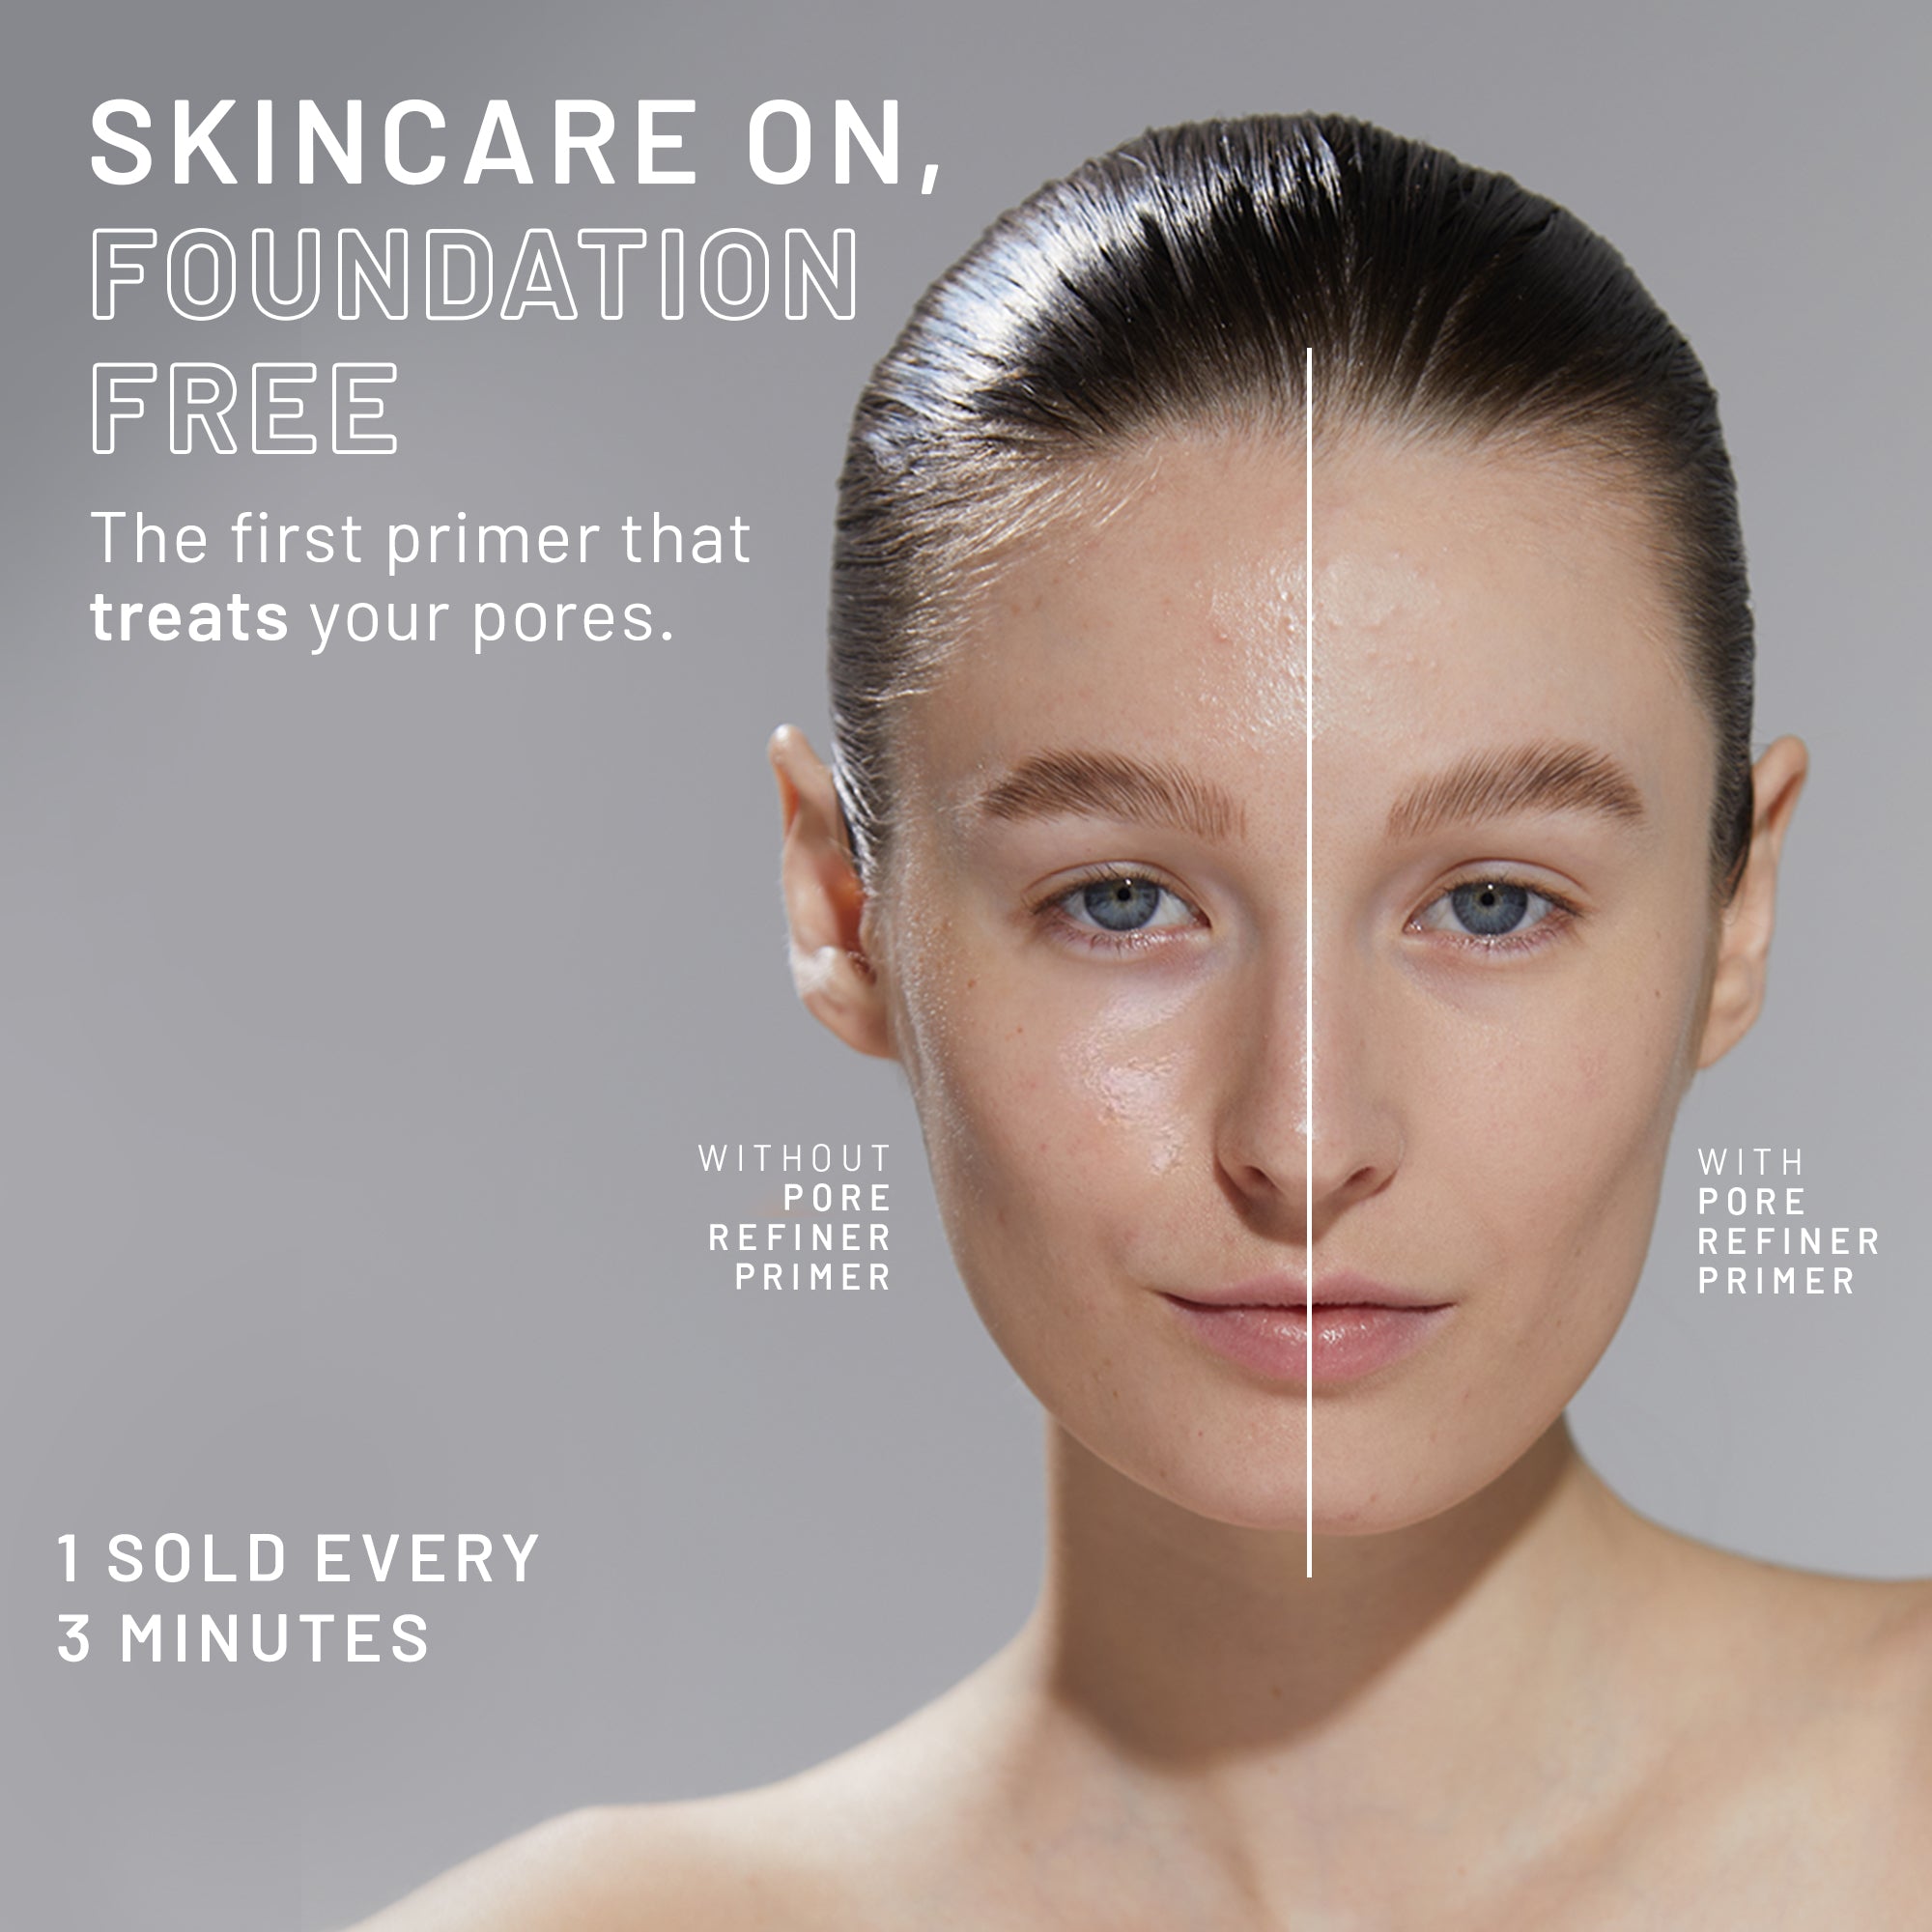 pores no more® pore refiner primer - Dr. Brandt Skincare